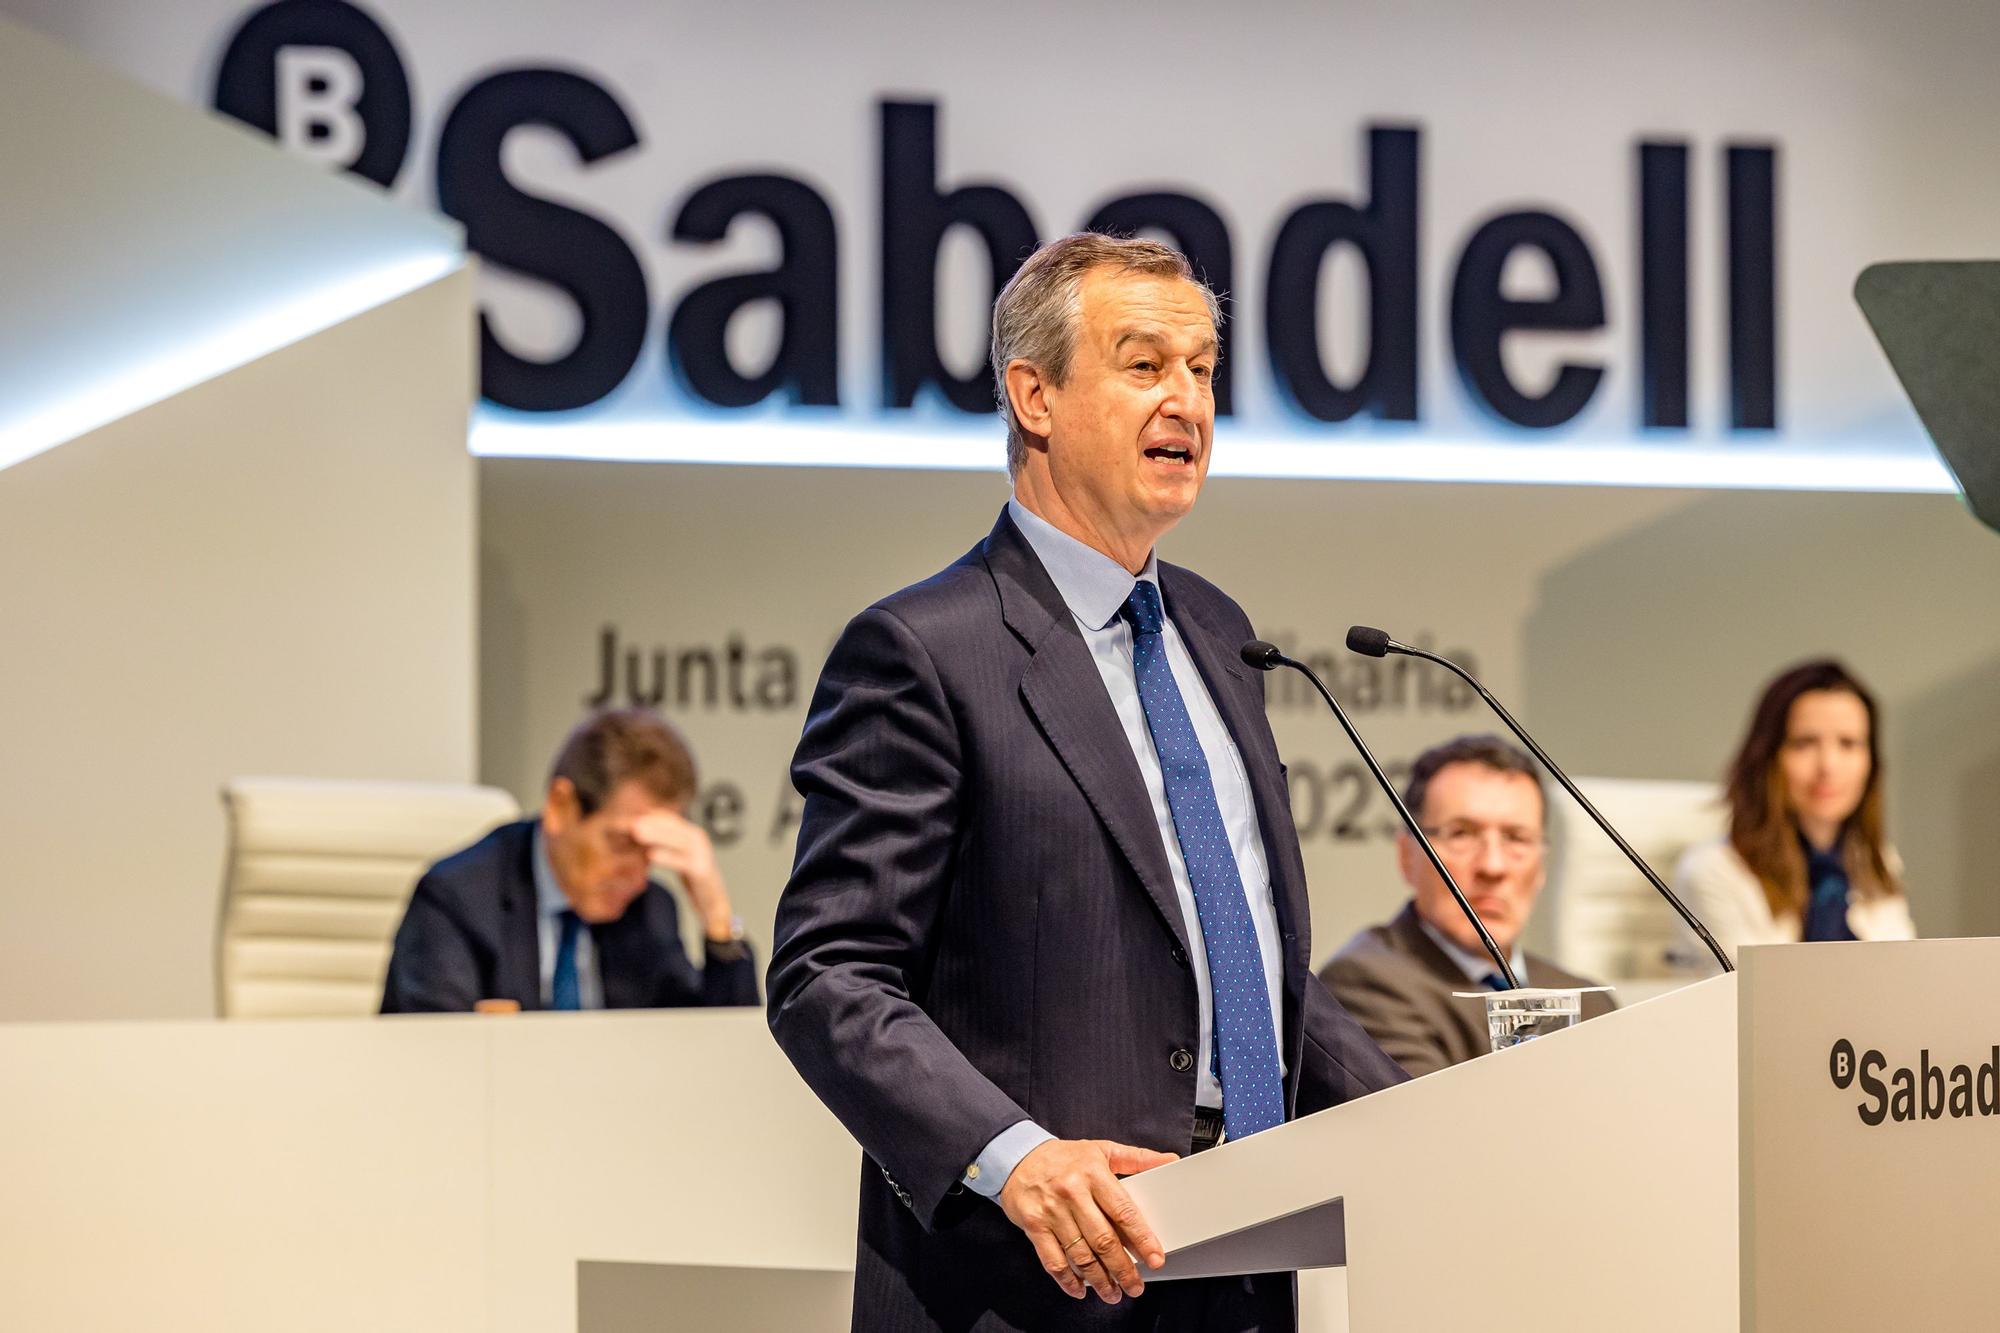 Los accionistas del Sabadell aprueban la reelección de Josep Oliu